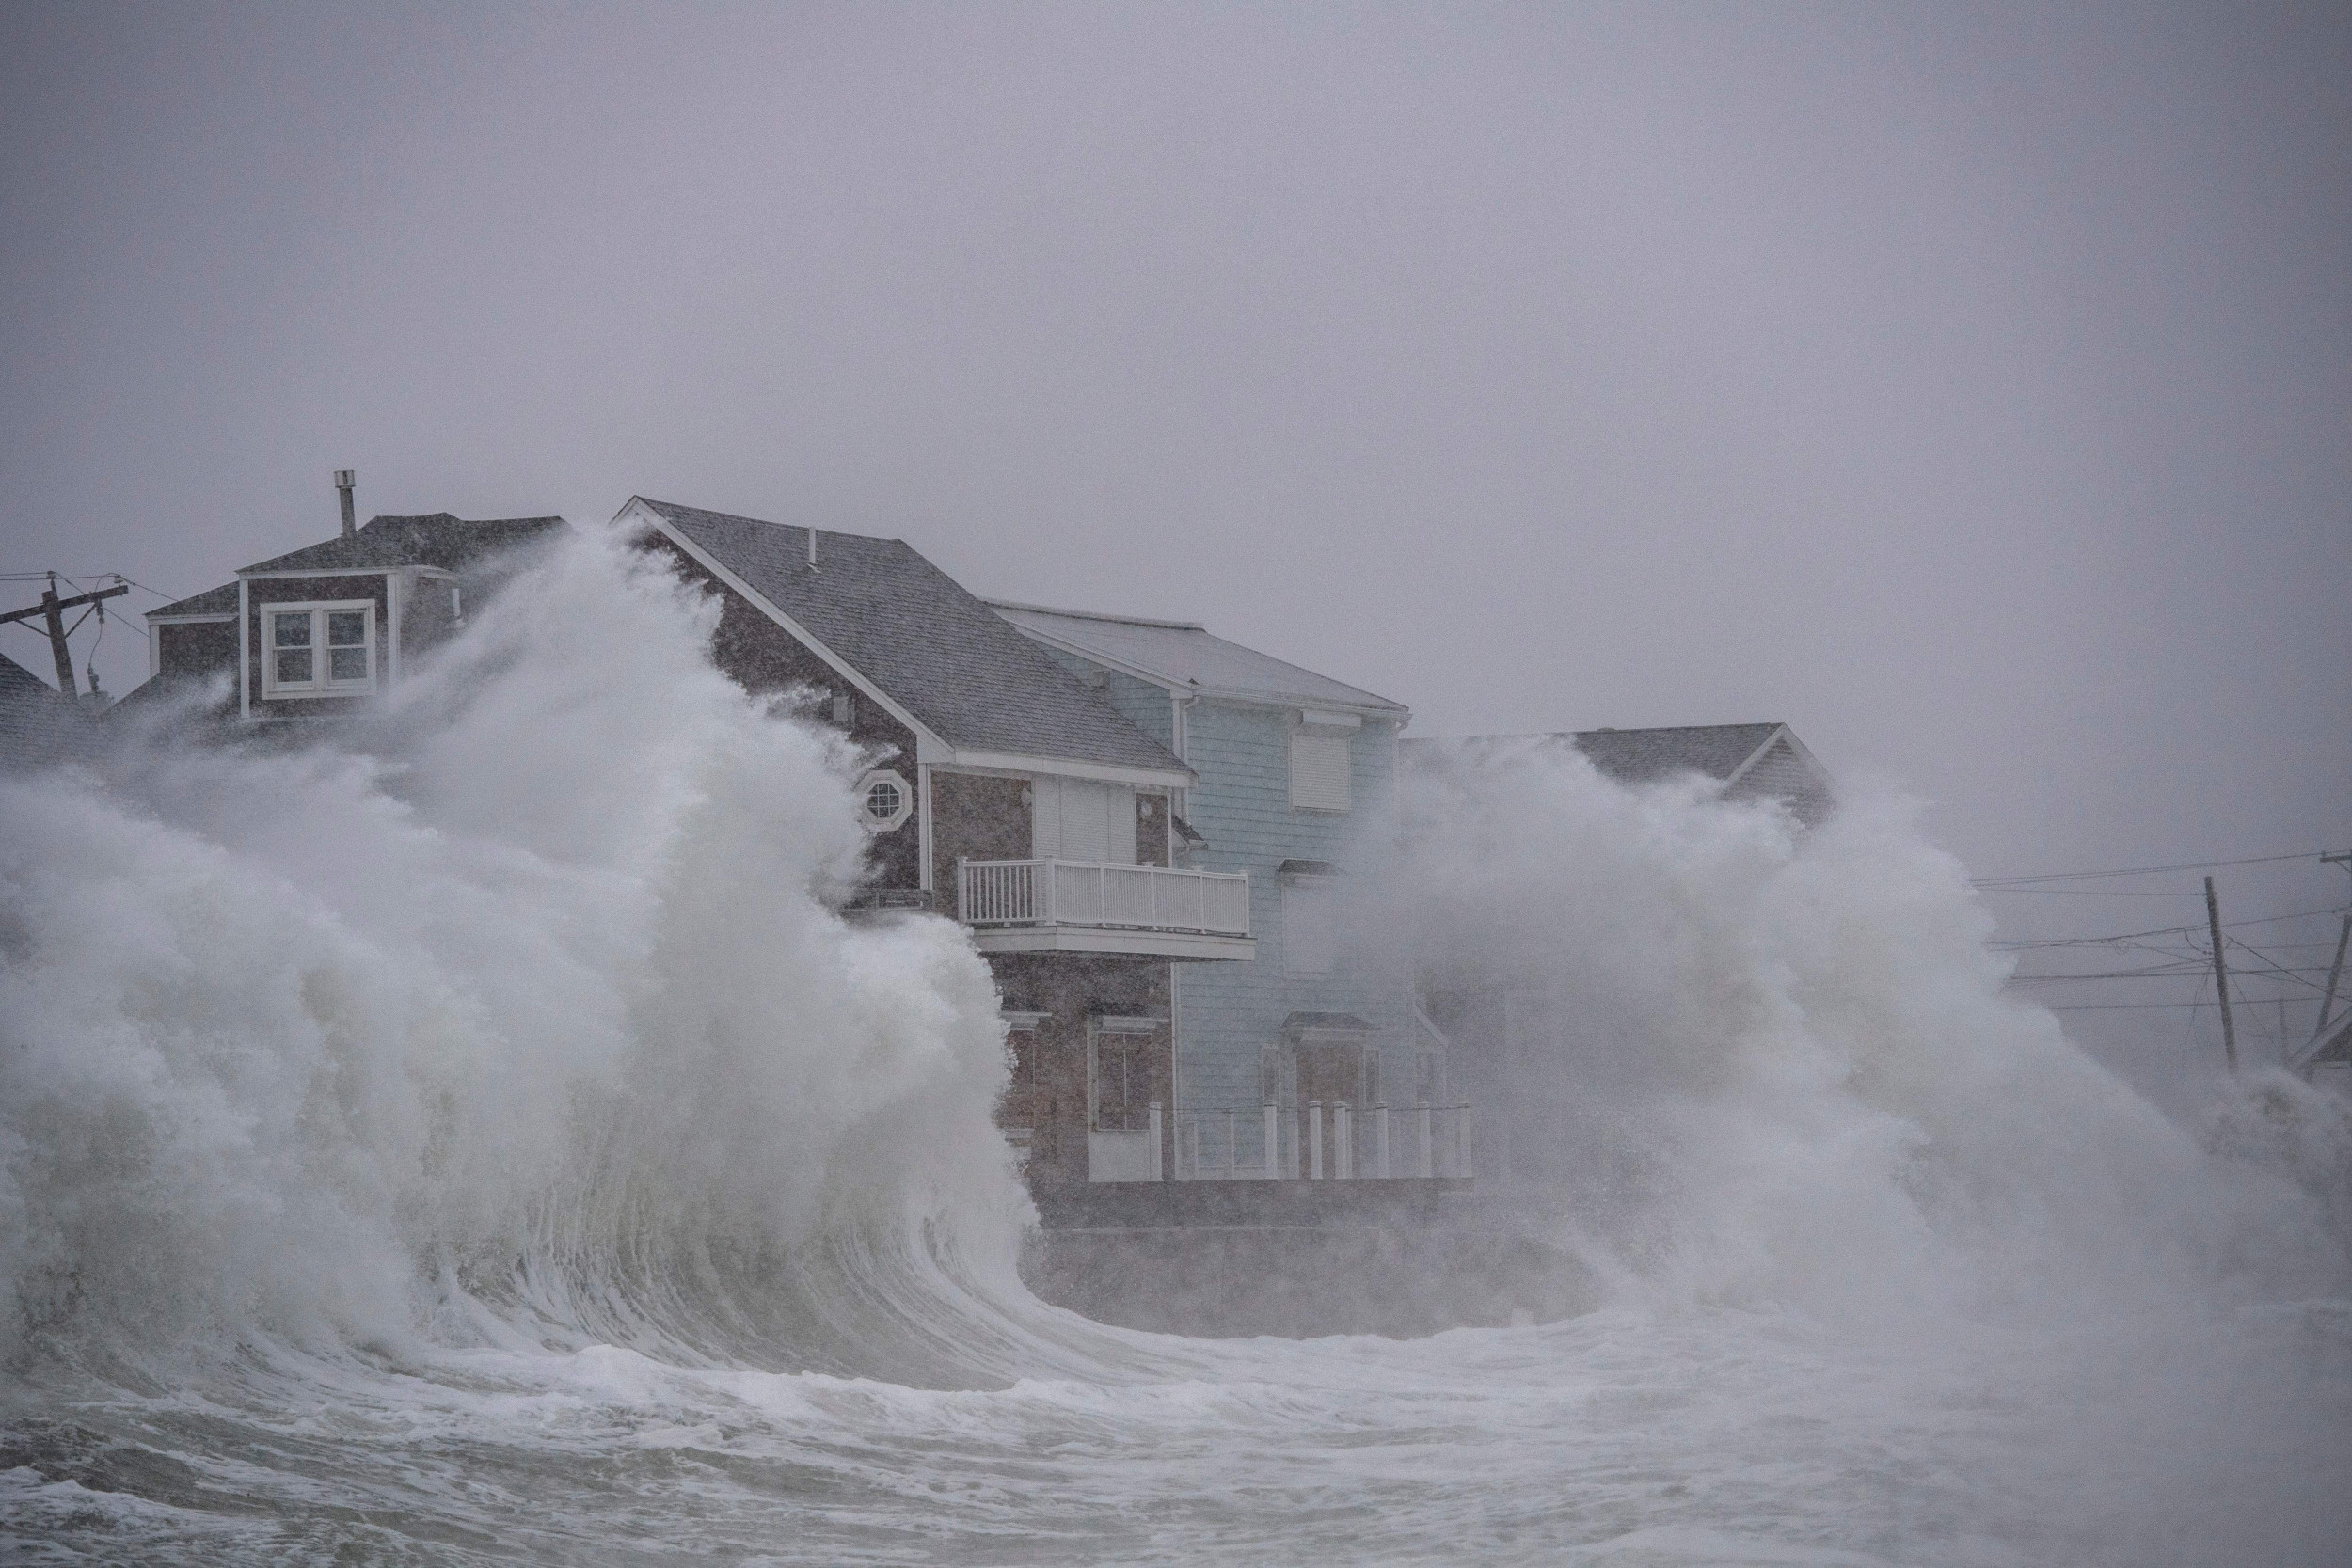 Les États-Unis font face à une augmentation « extrêmement inquiétante » des vagues d’ouragans